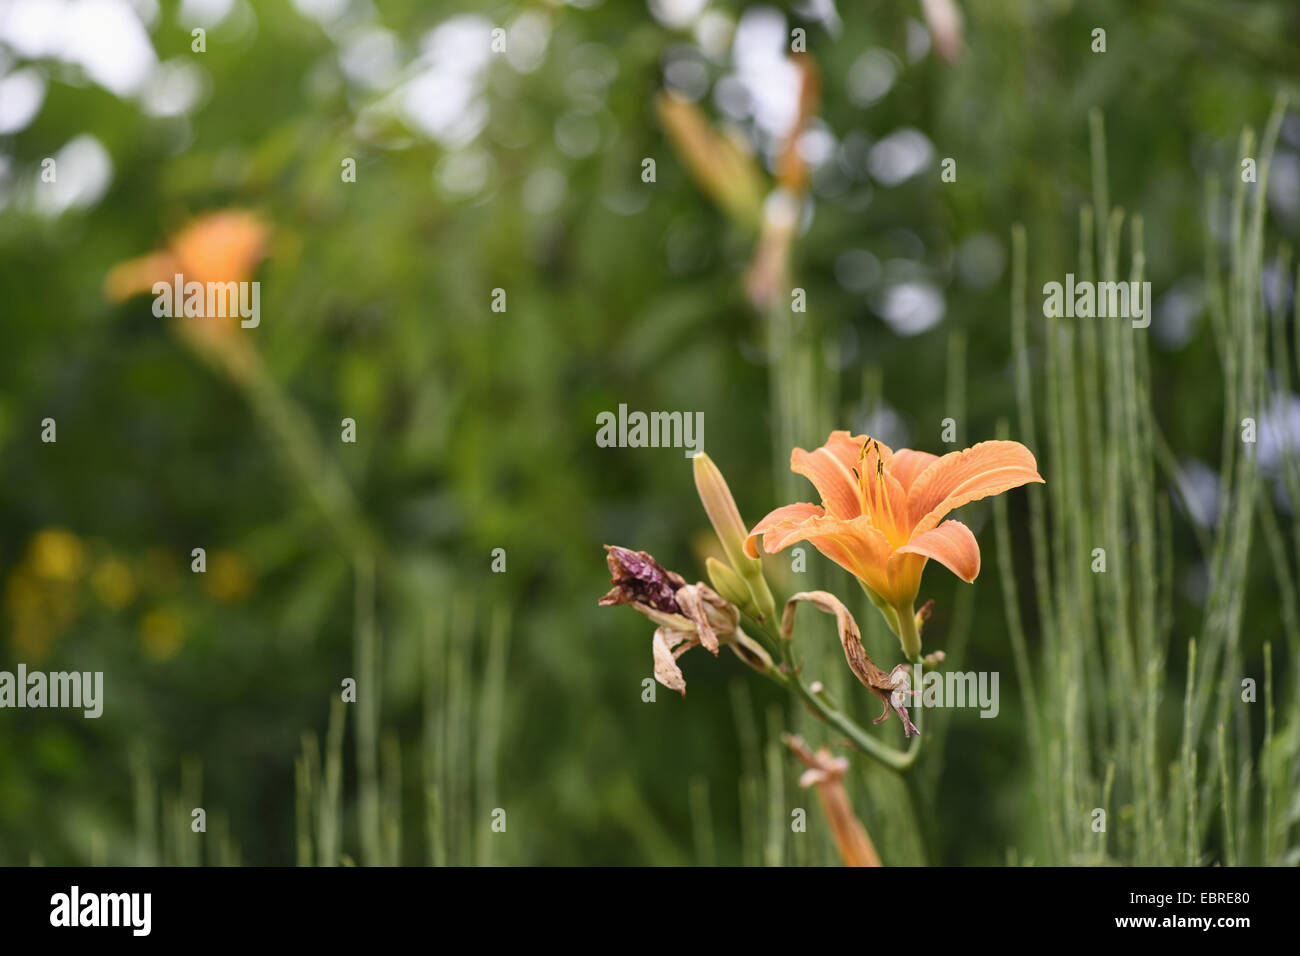 common day lily, tawny daylily, yellow daylily, orange daylily (Hemerocallis fulva), single flower in a inflorescence Stock Photo